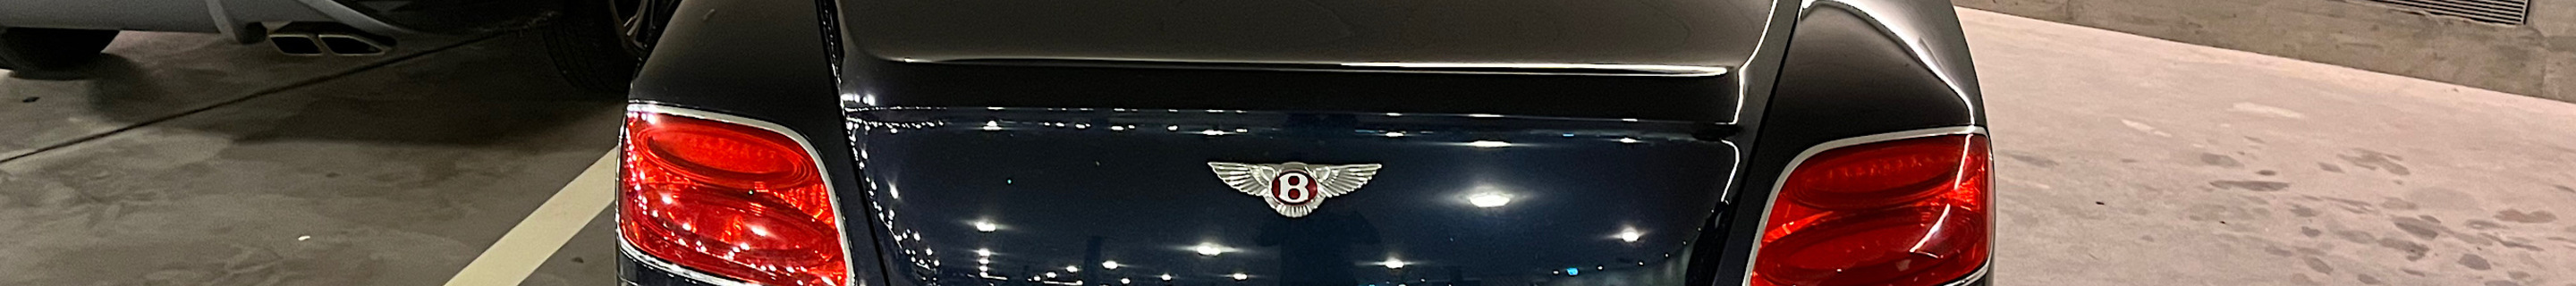 Bentley Continental GTC V8 2016